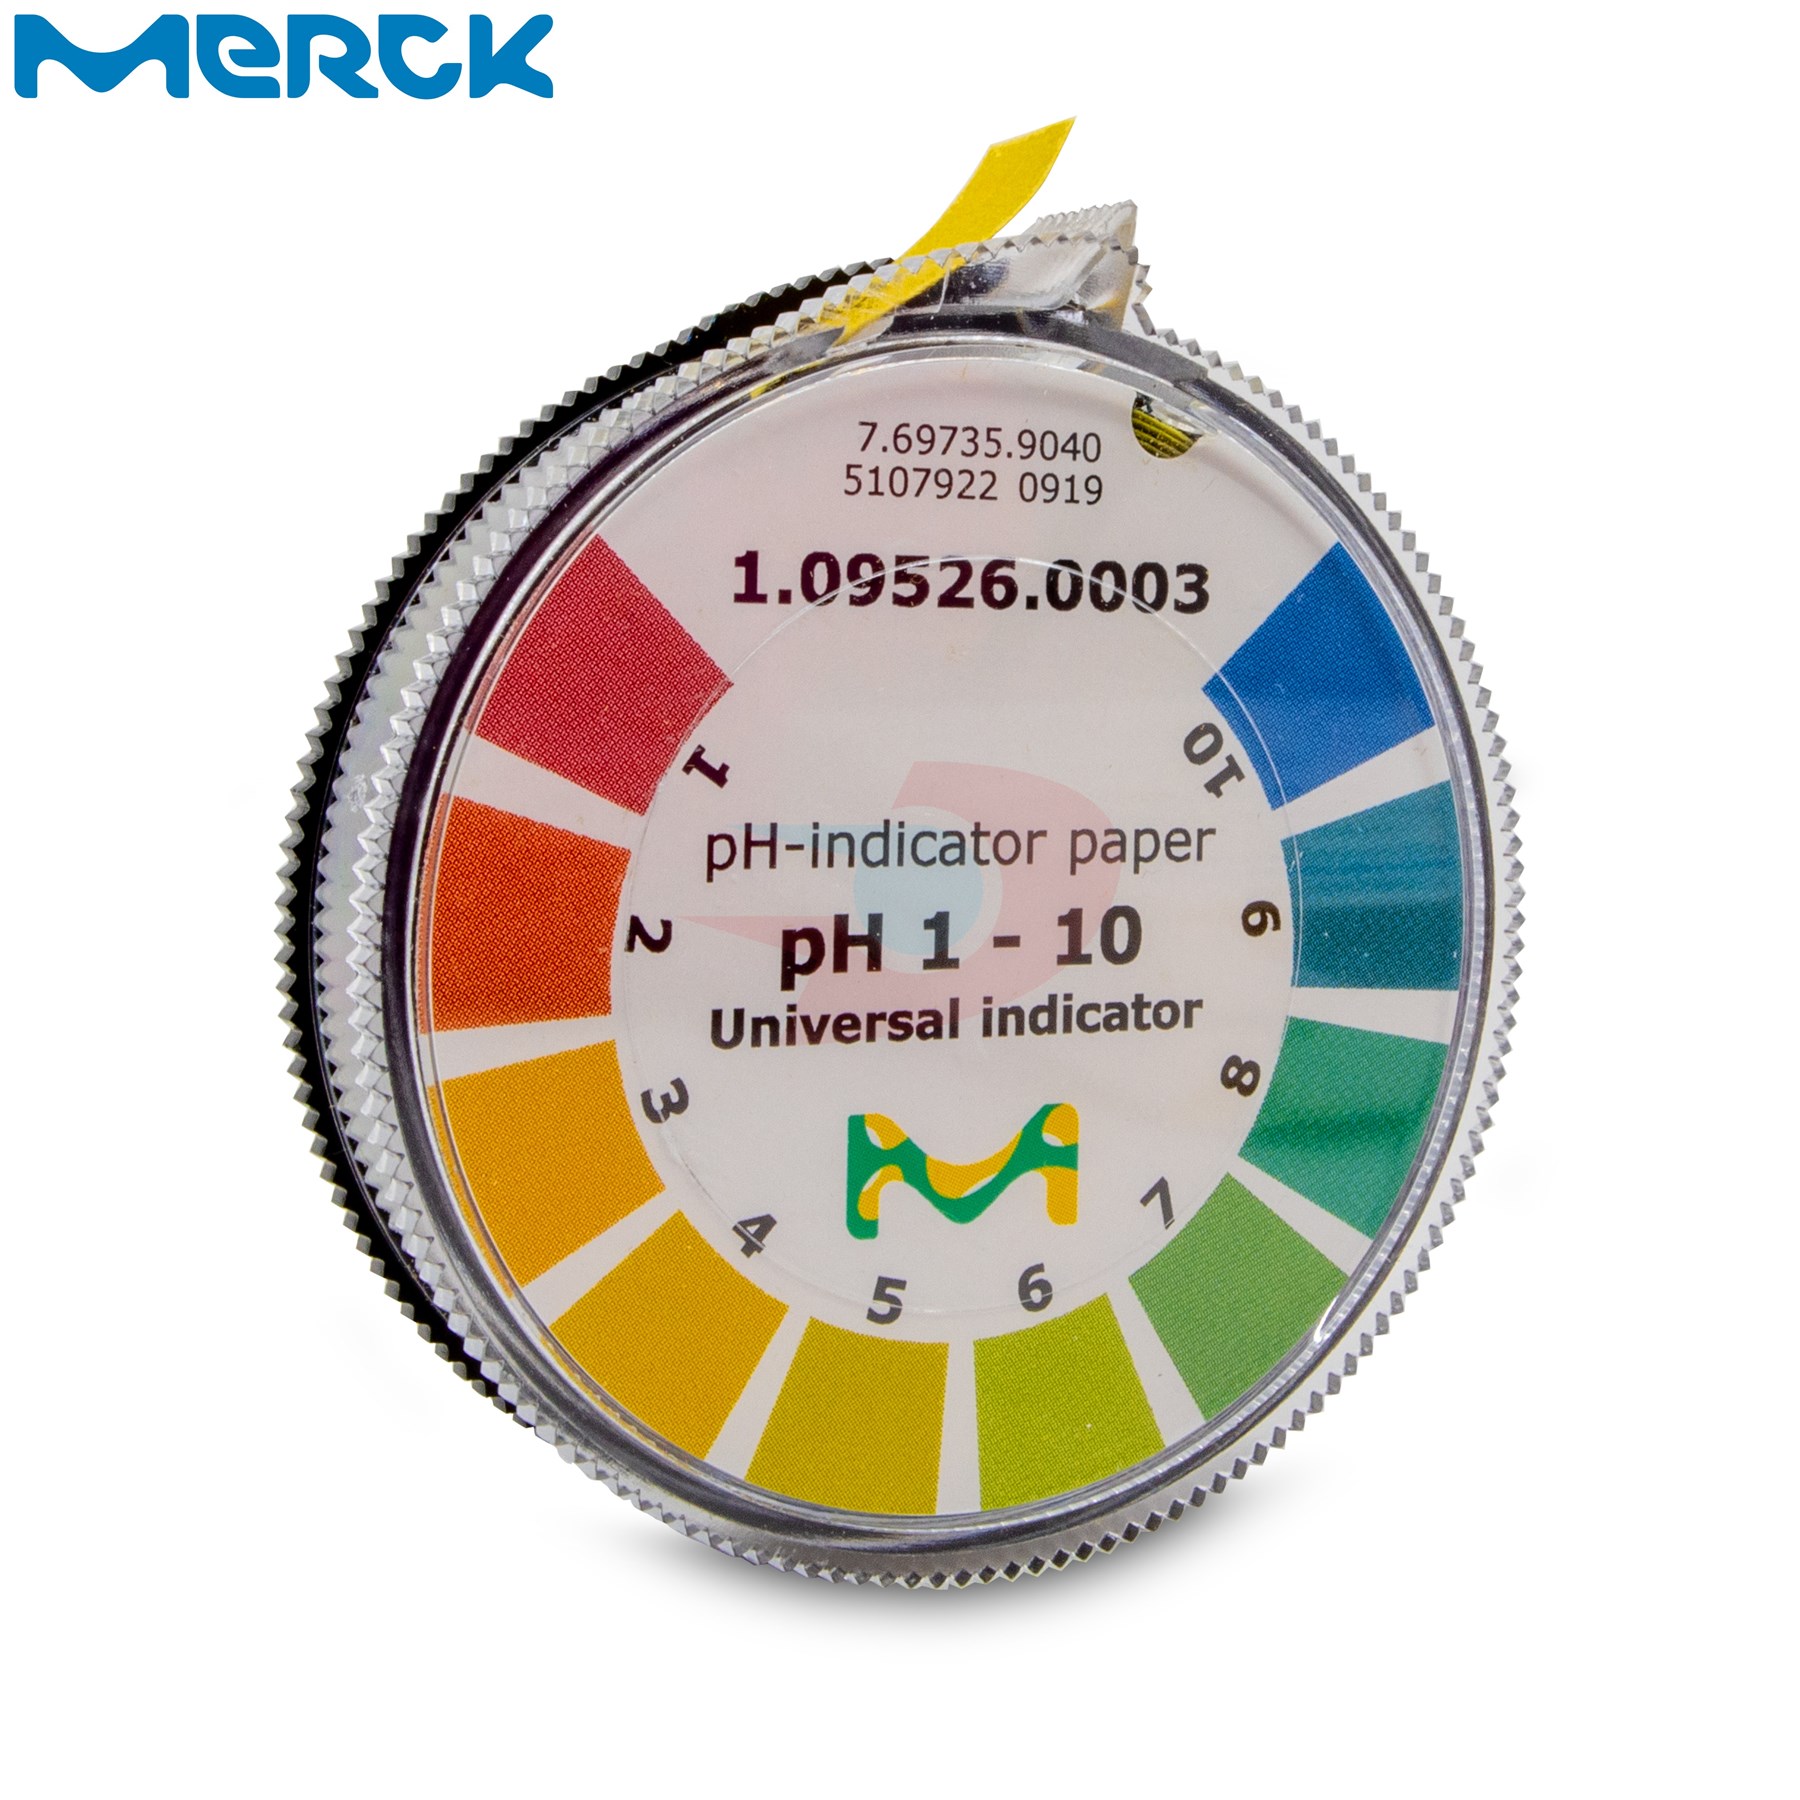 Merck Ph Ölçüm Kağıdı Rulo Ph 0-10 1.09526.0003 100 Ad.